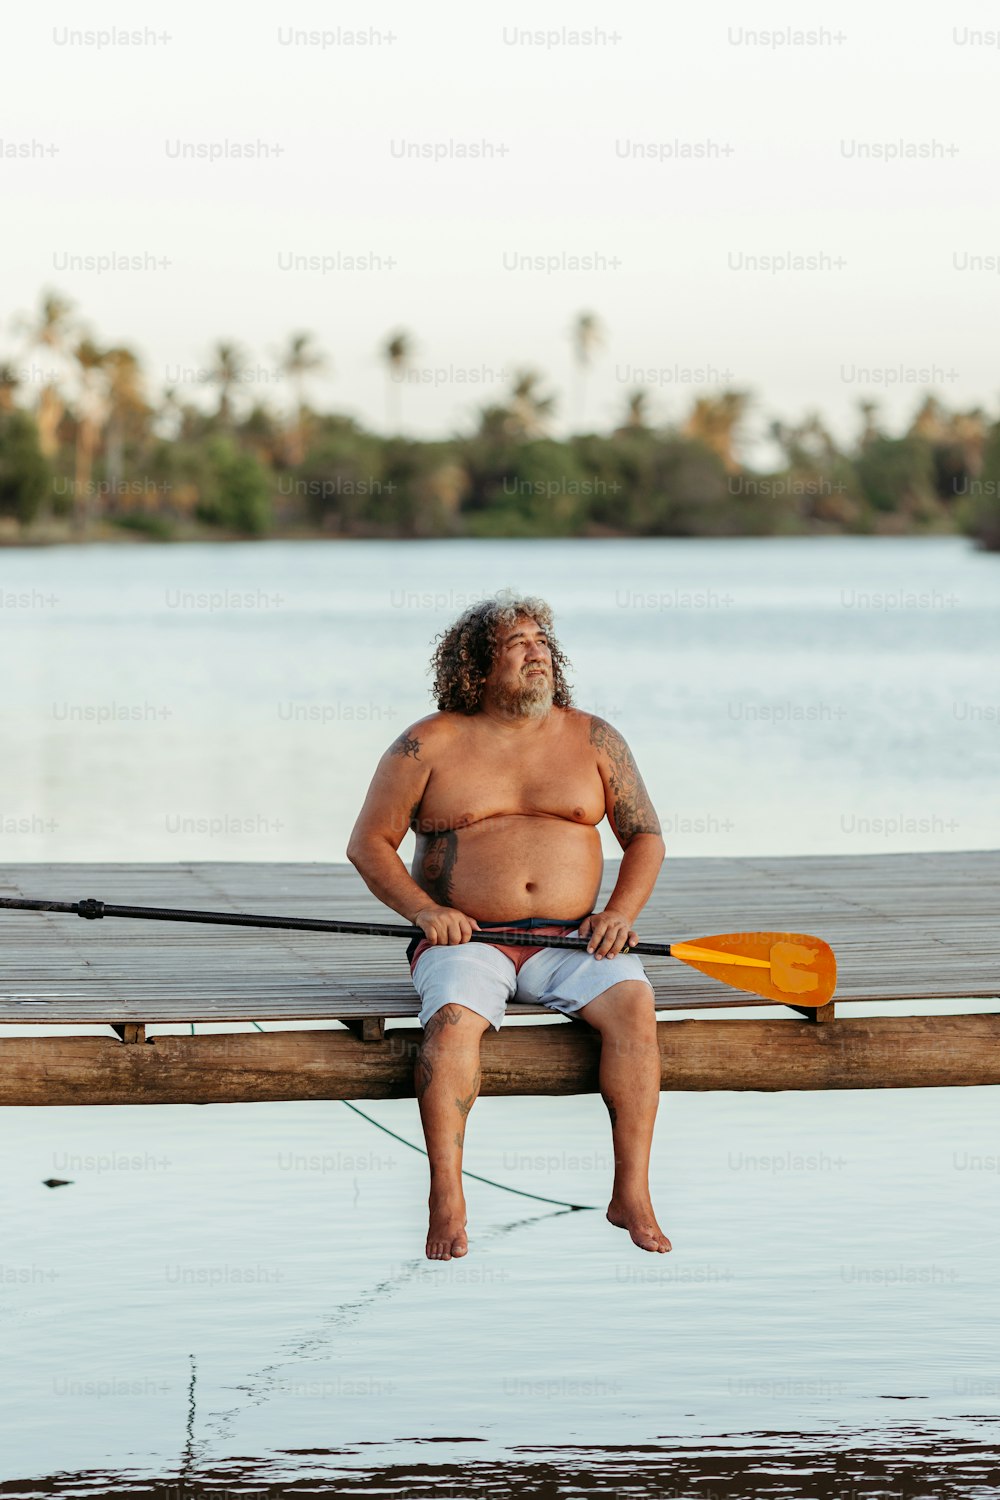 Un hombre sentado en un muelle con un kayak